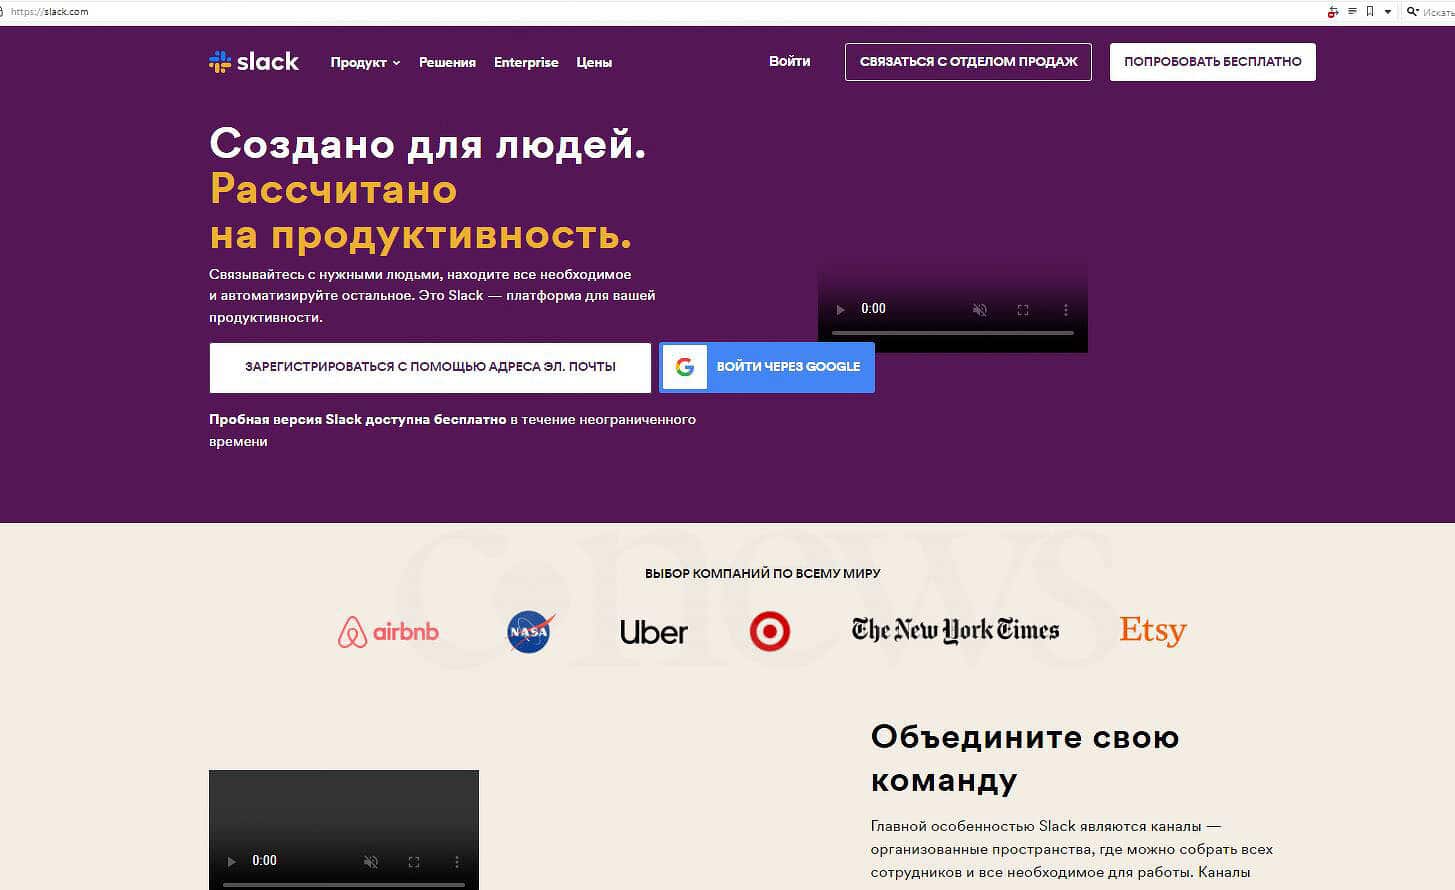 Придется учить английский. Slack отключает поддержку русского языка назло всем россиянам